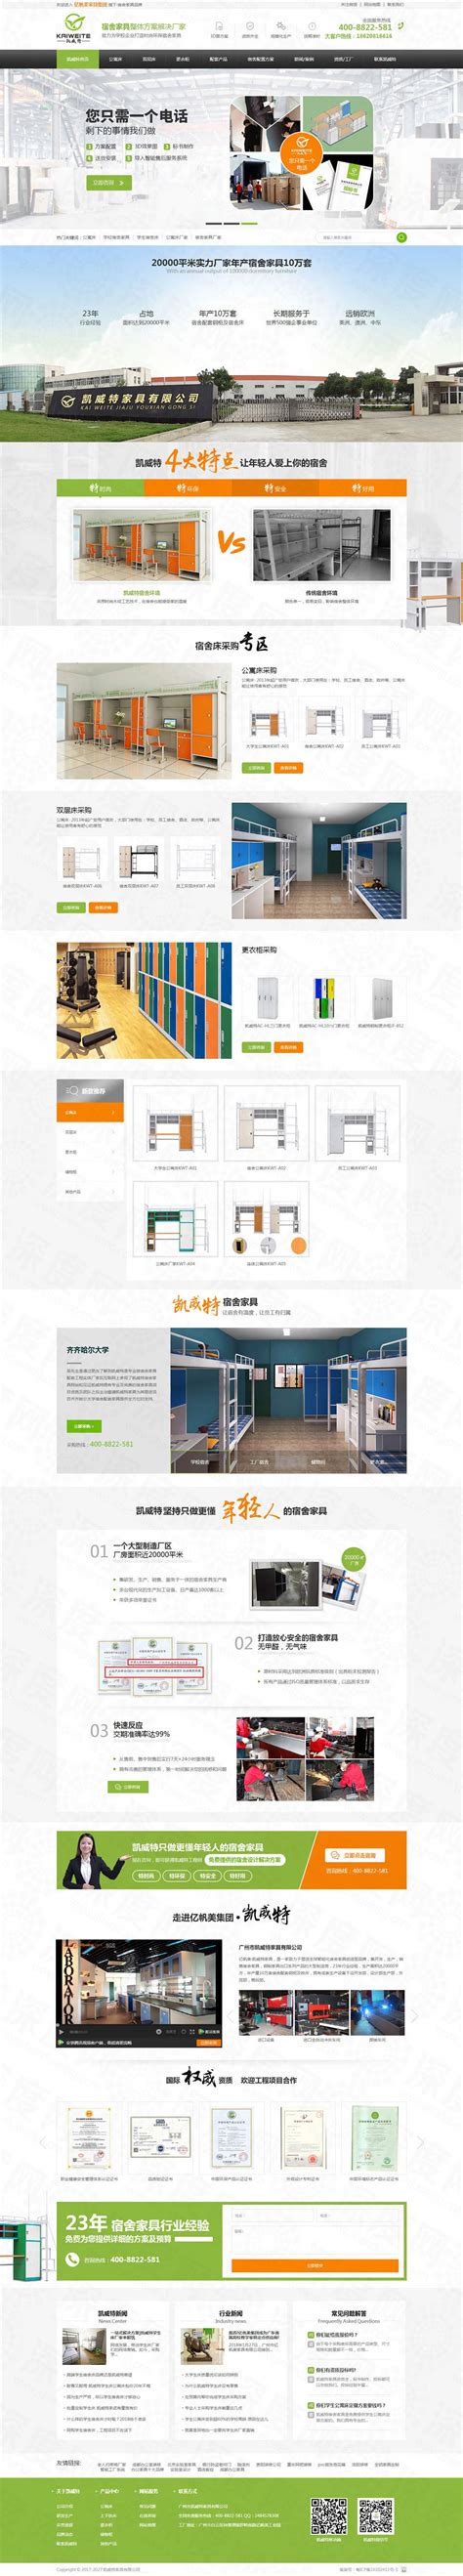 广州市凯威特家具营销型网站建设案例|家具/家纺/家居|深度网